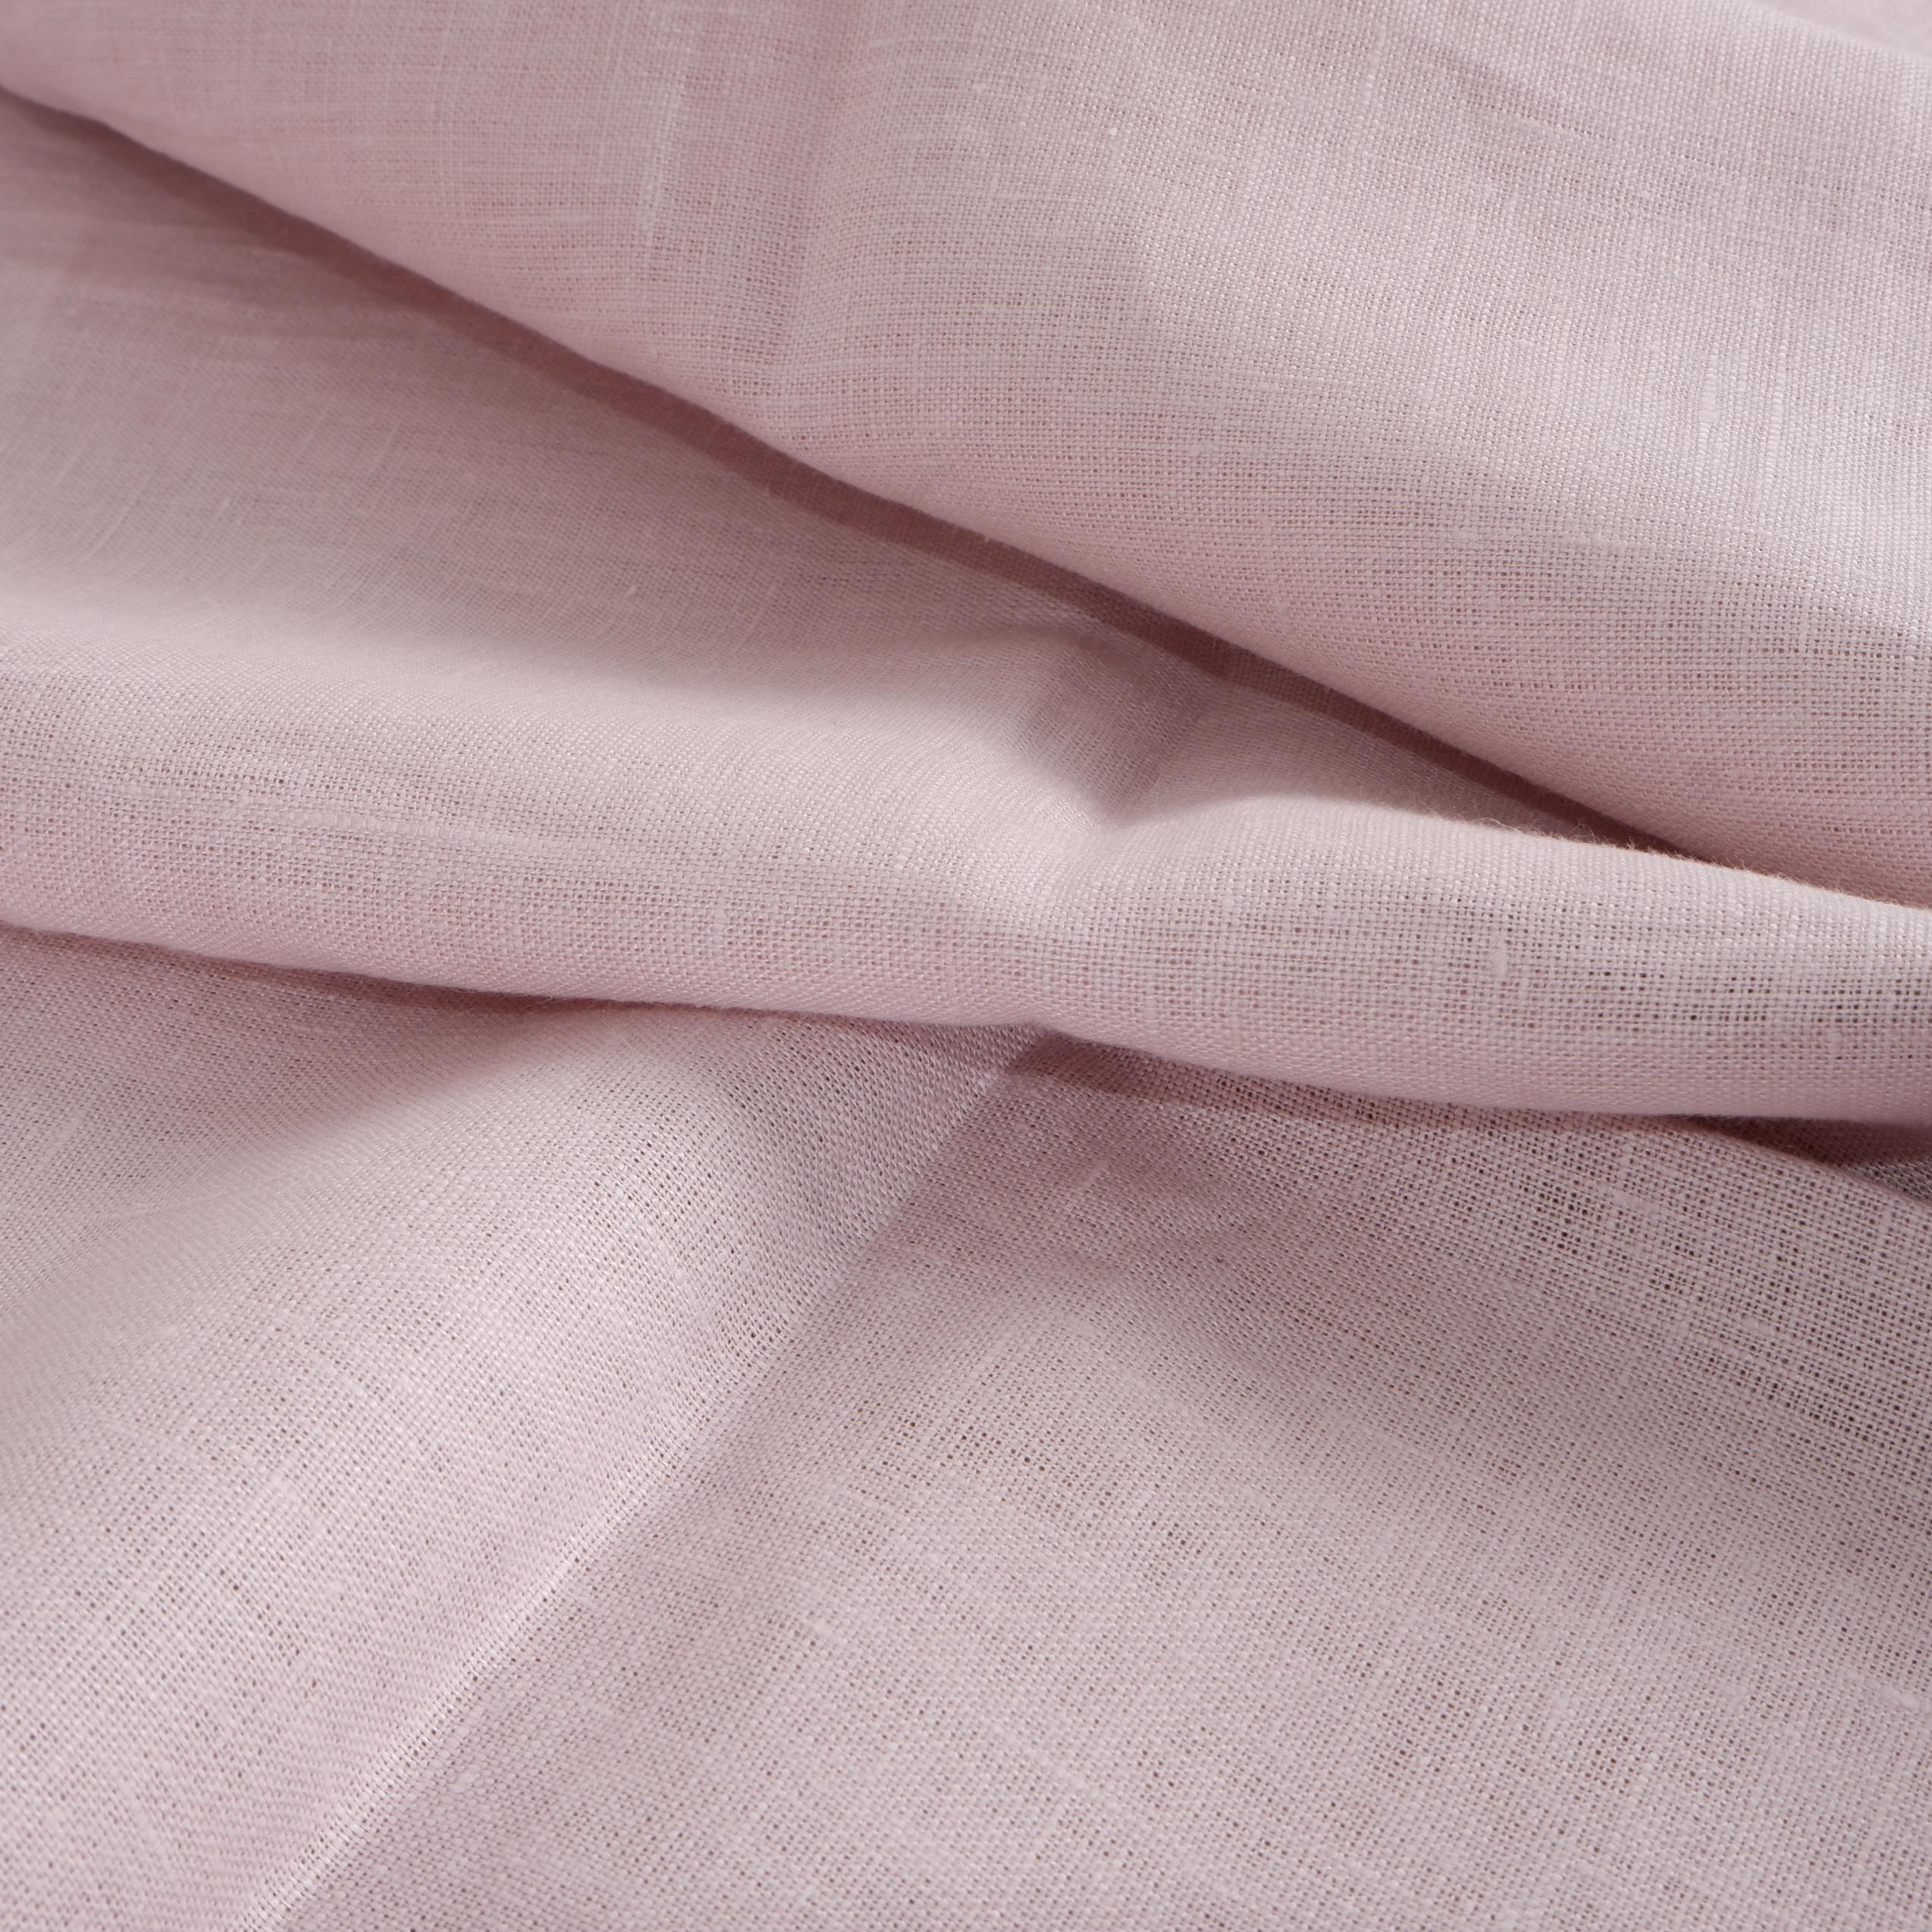 2479-005 Home Essentials - Linen - Light Pink Fabric